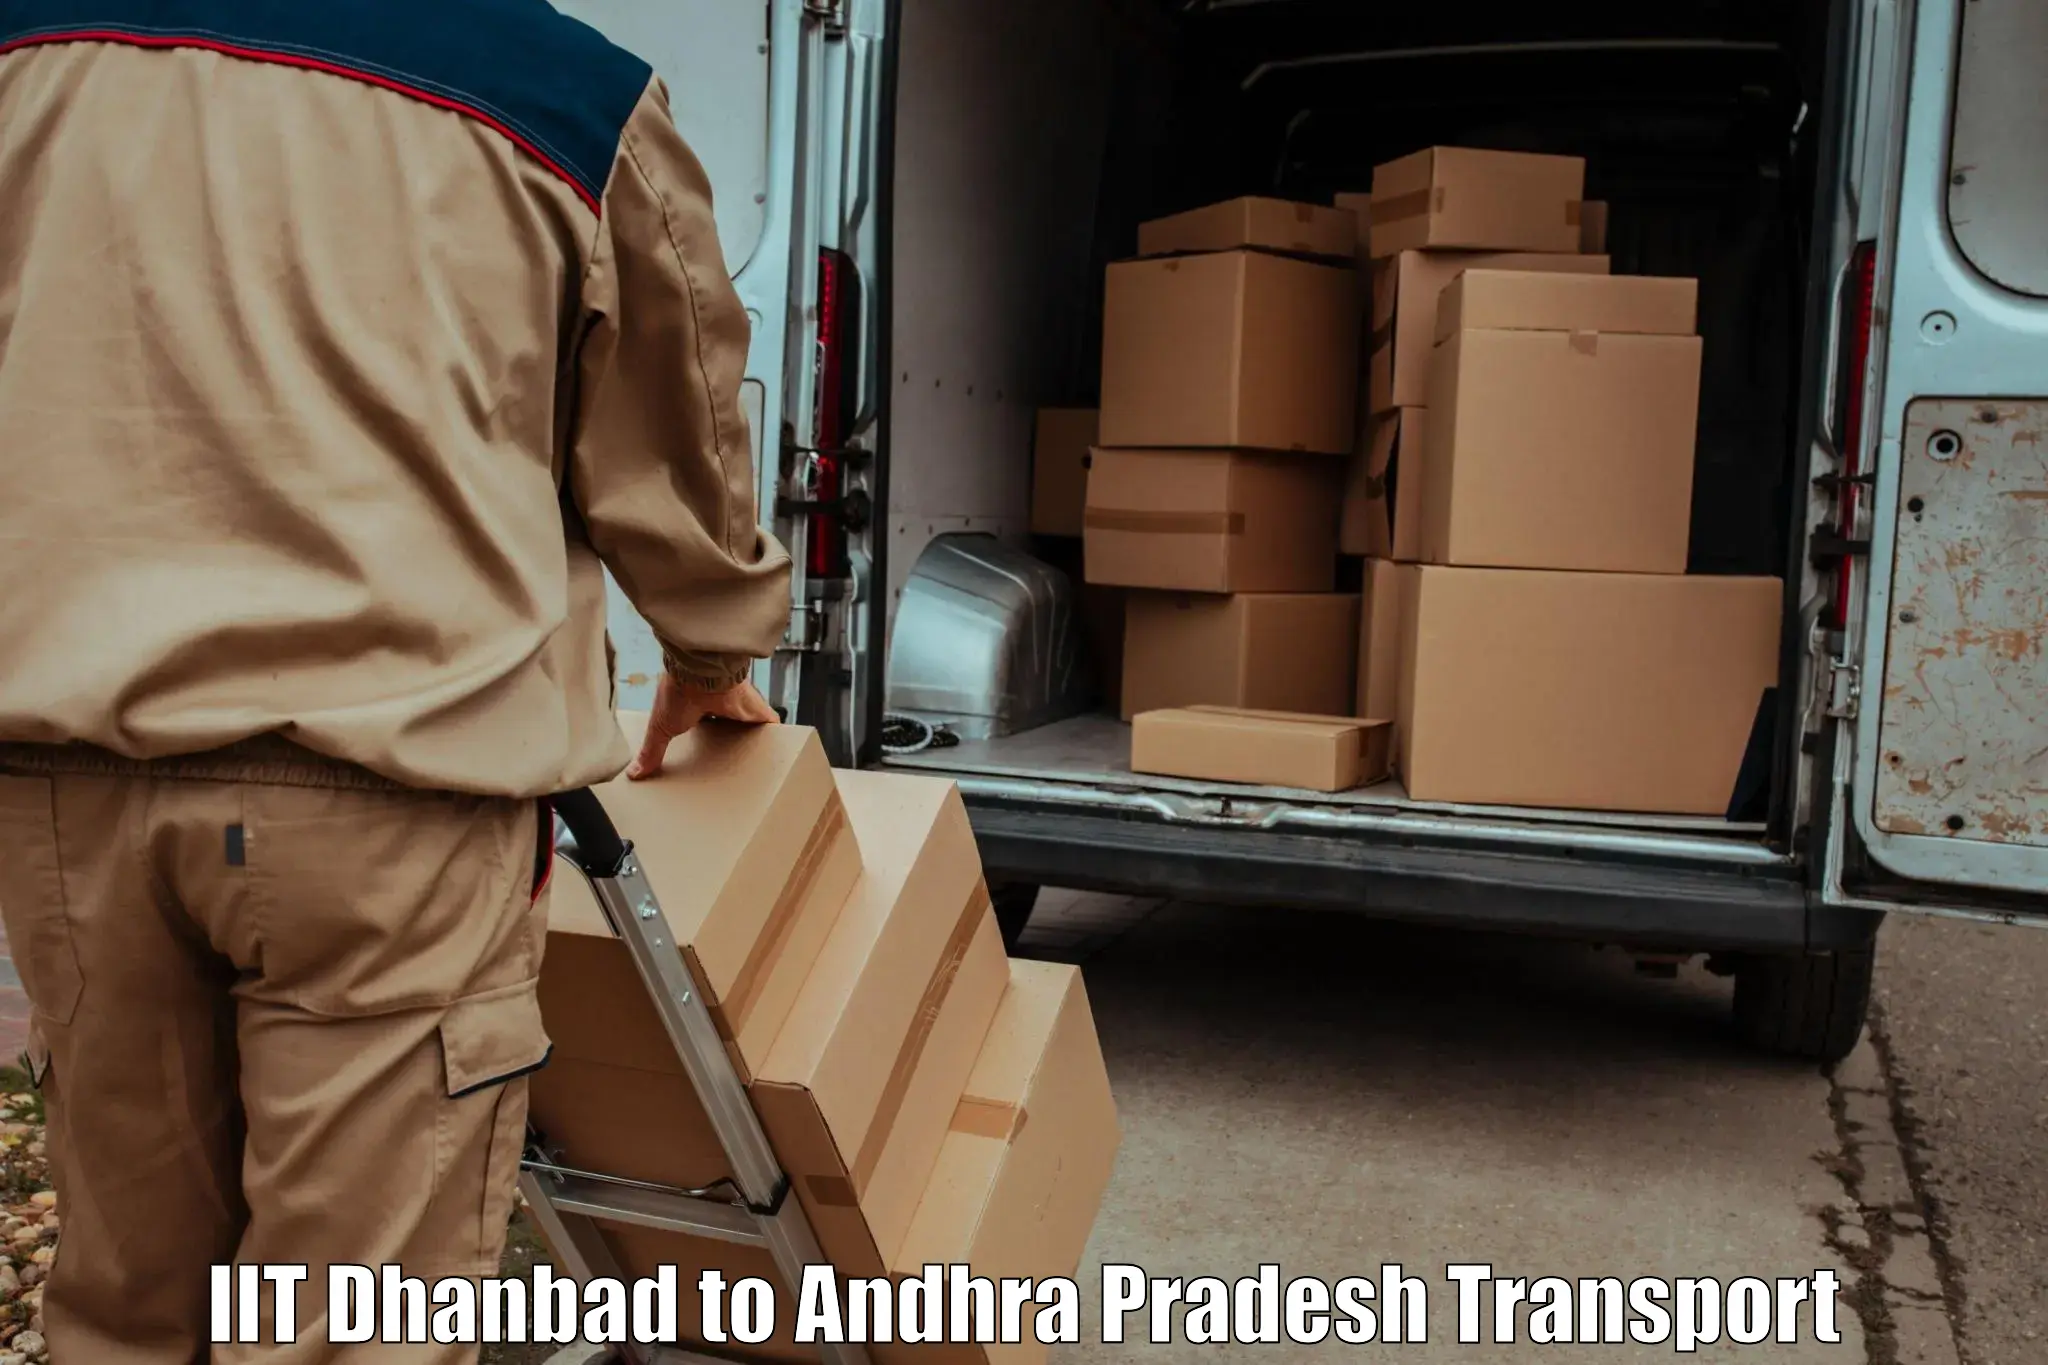 Pick up transport service IIT Dhanbad to Venkatagirikota